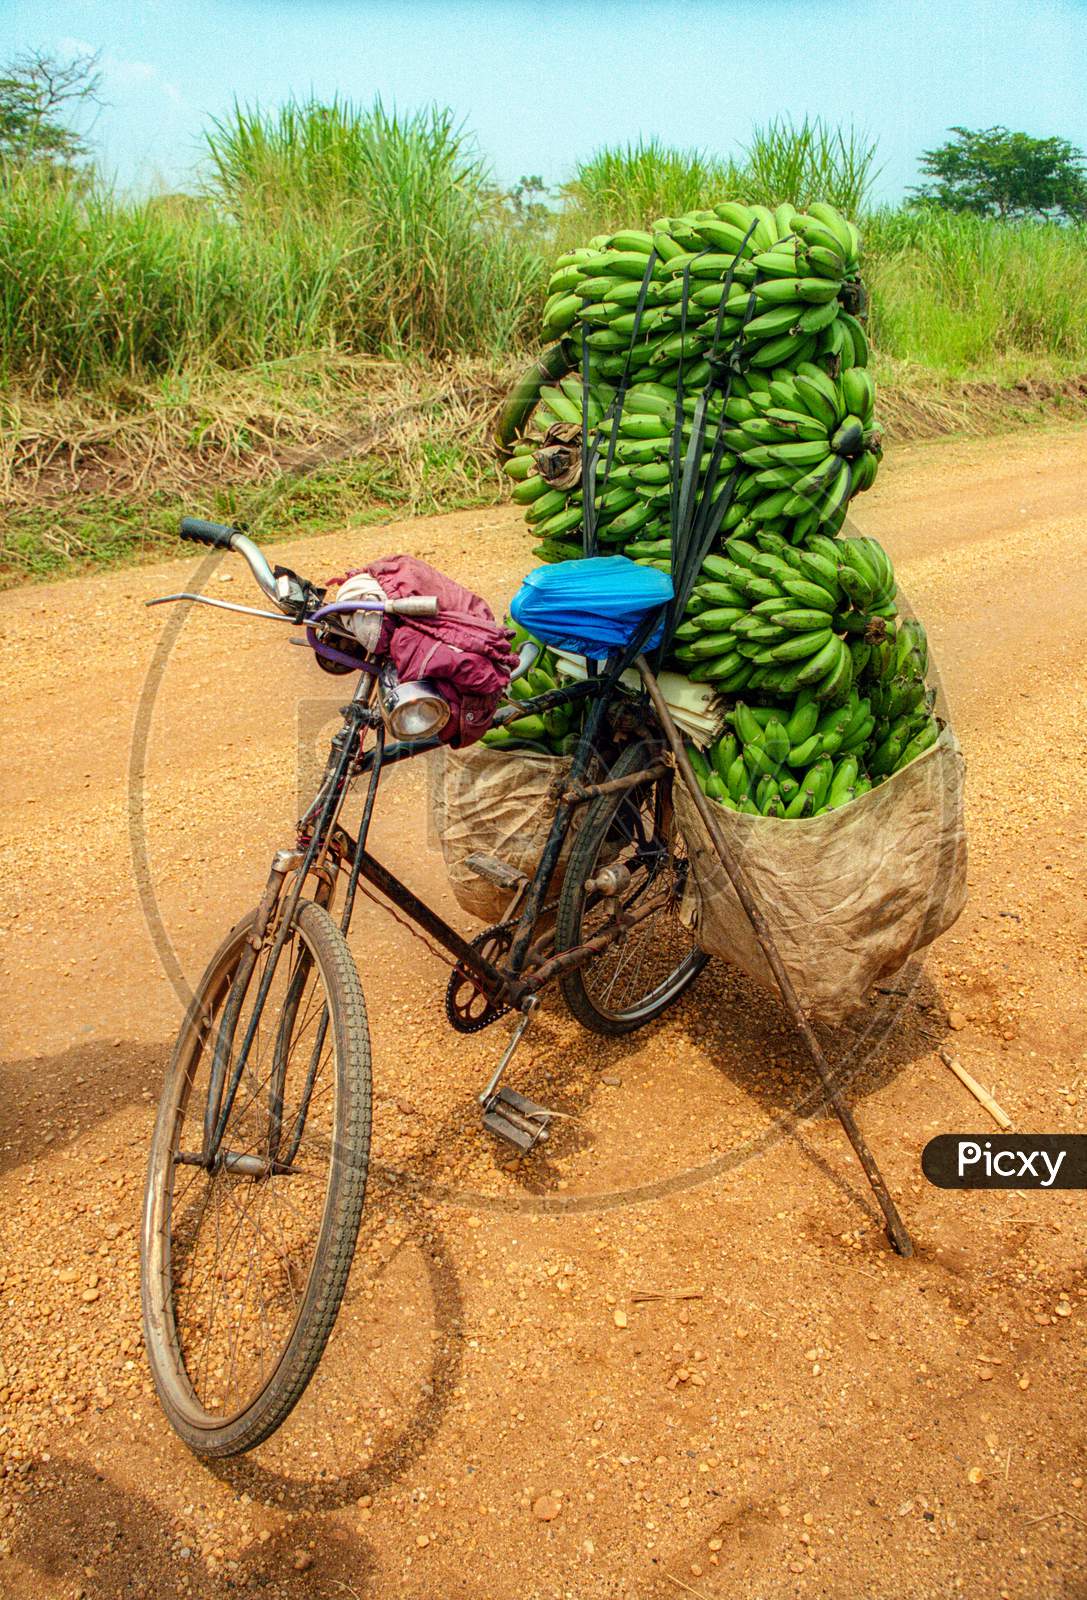 green banana on bicycle